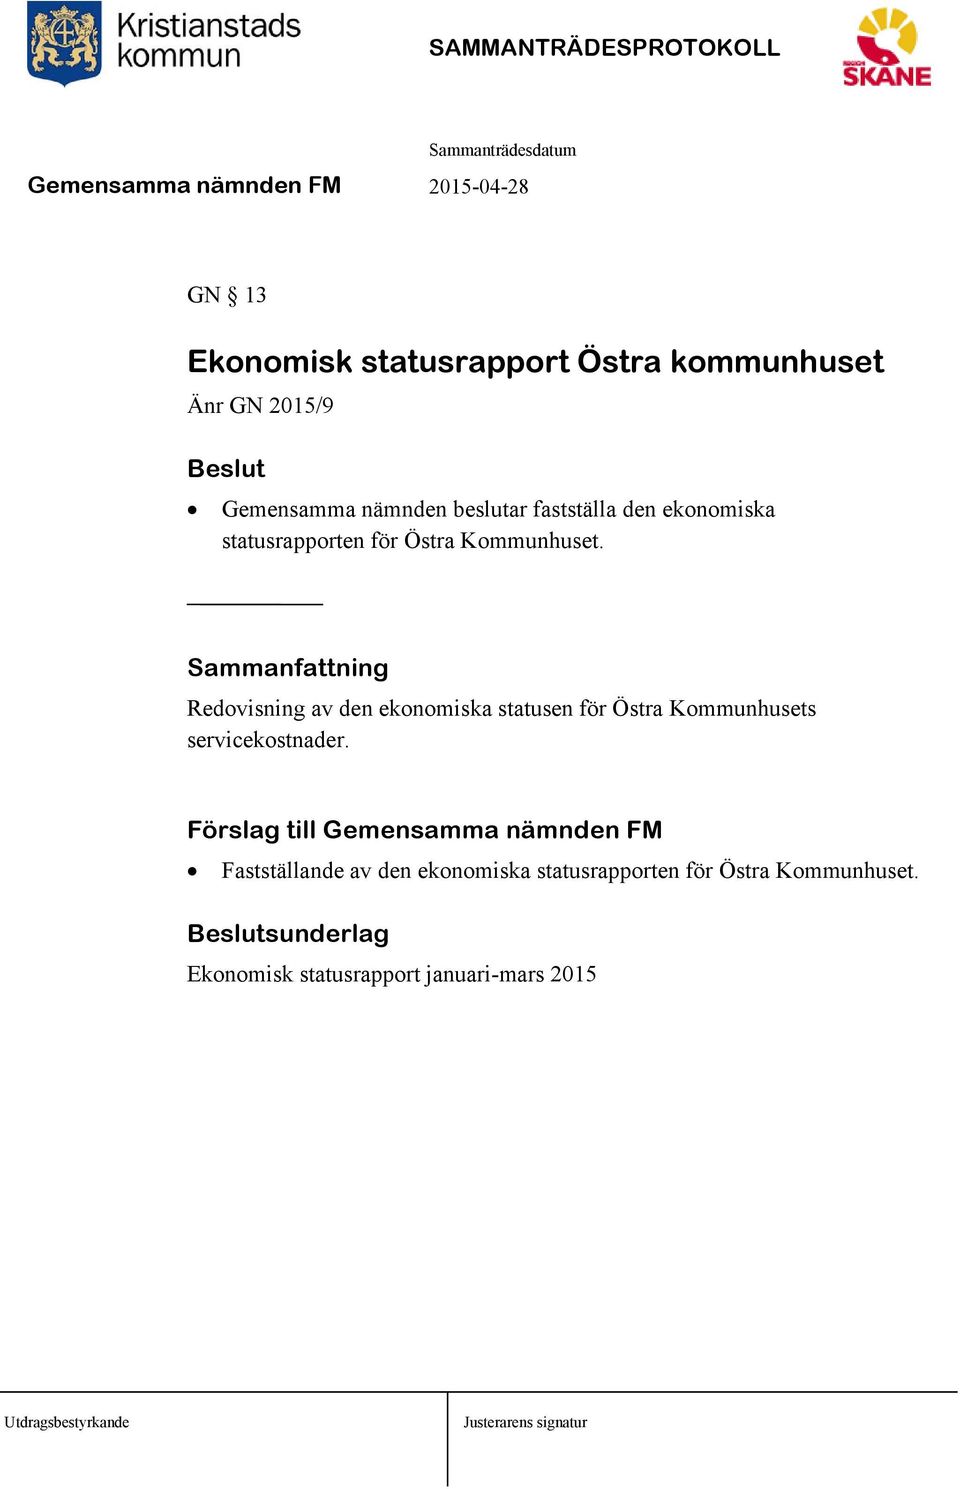 Sammanfattning Redovisning av den ekonomiska statusen för Östra Kommunhusets servicekostnader.